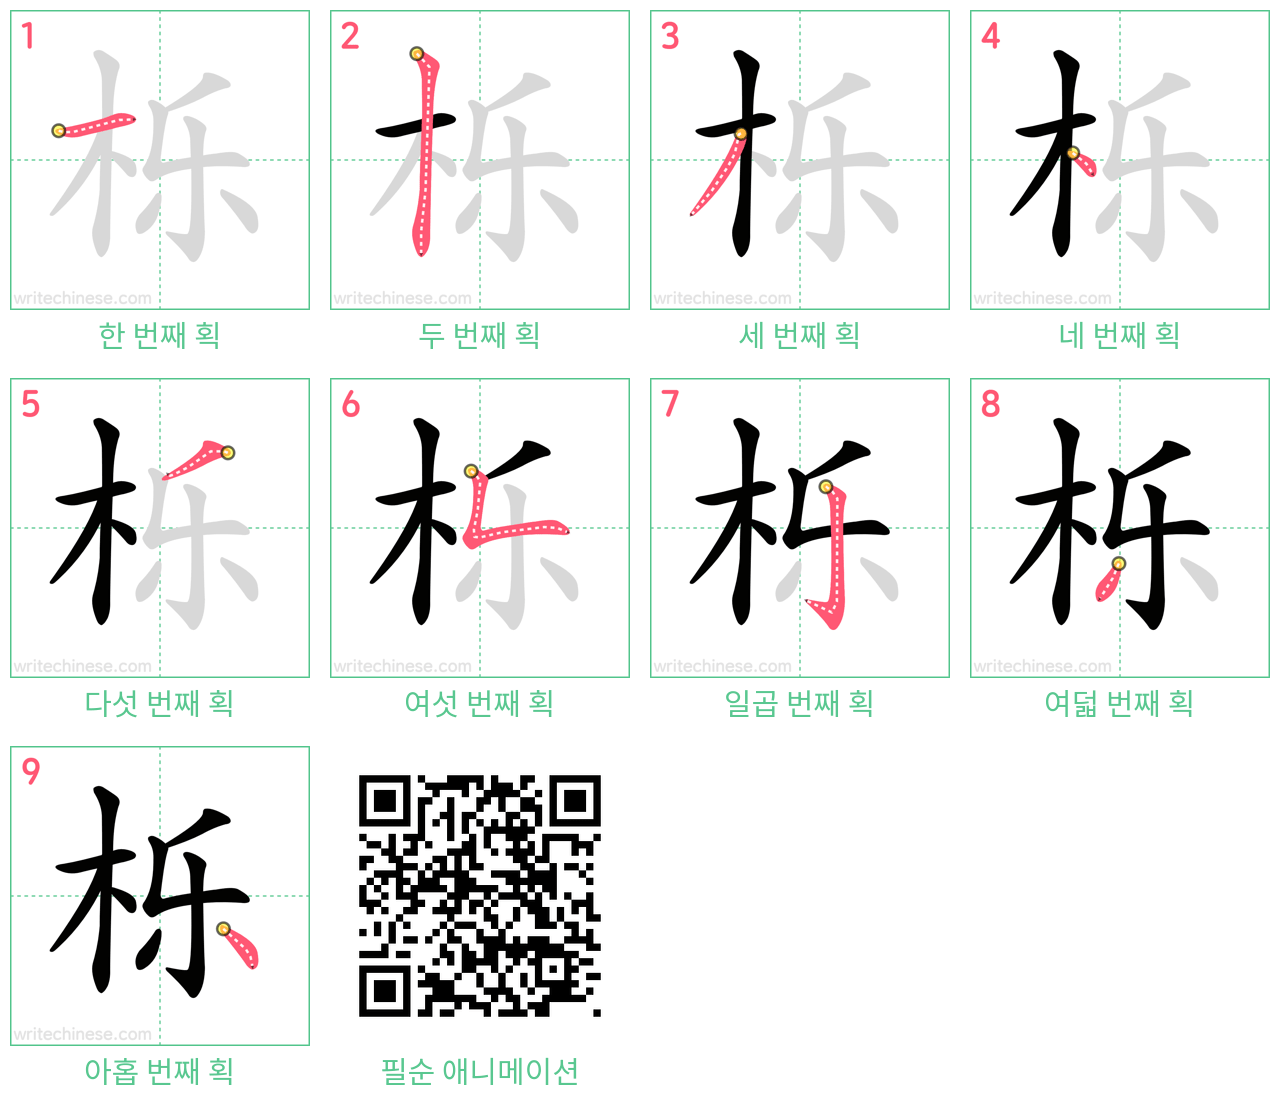 栎 step-by-step stroke order diagrams